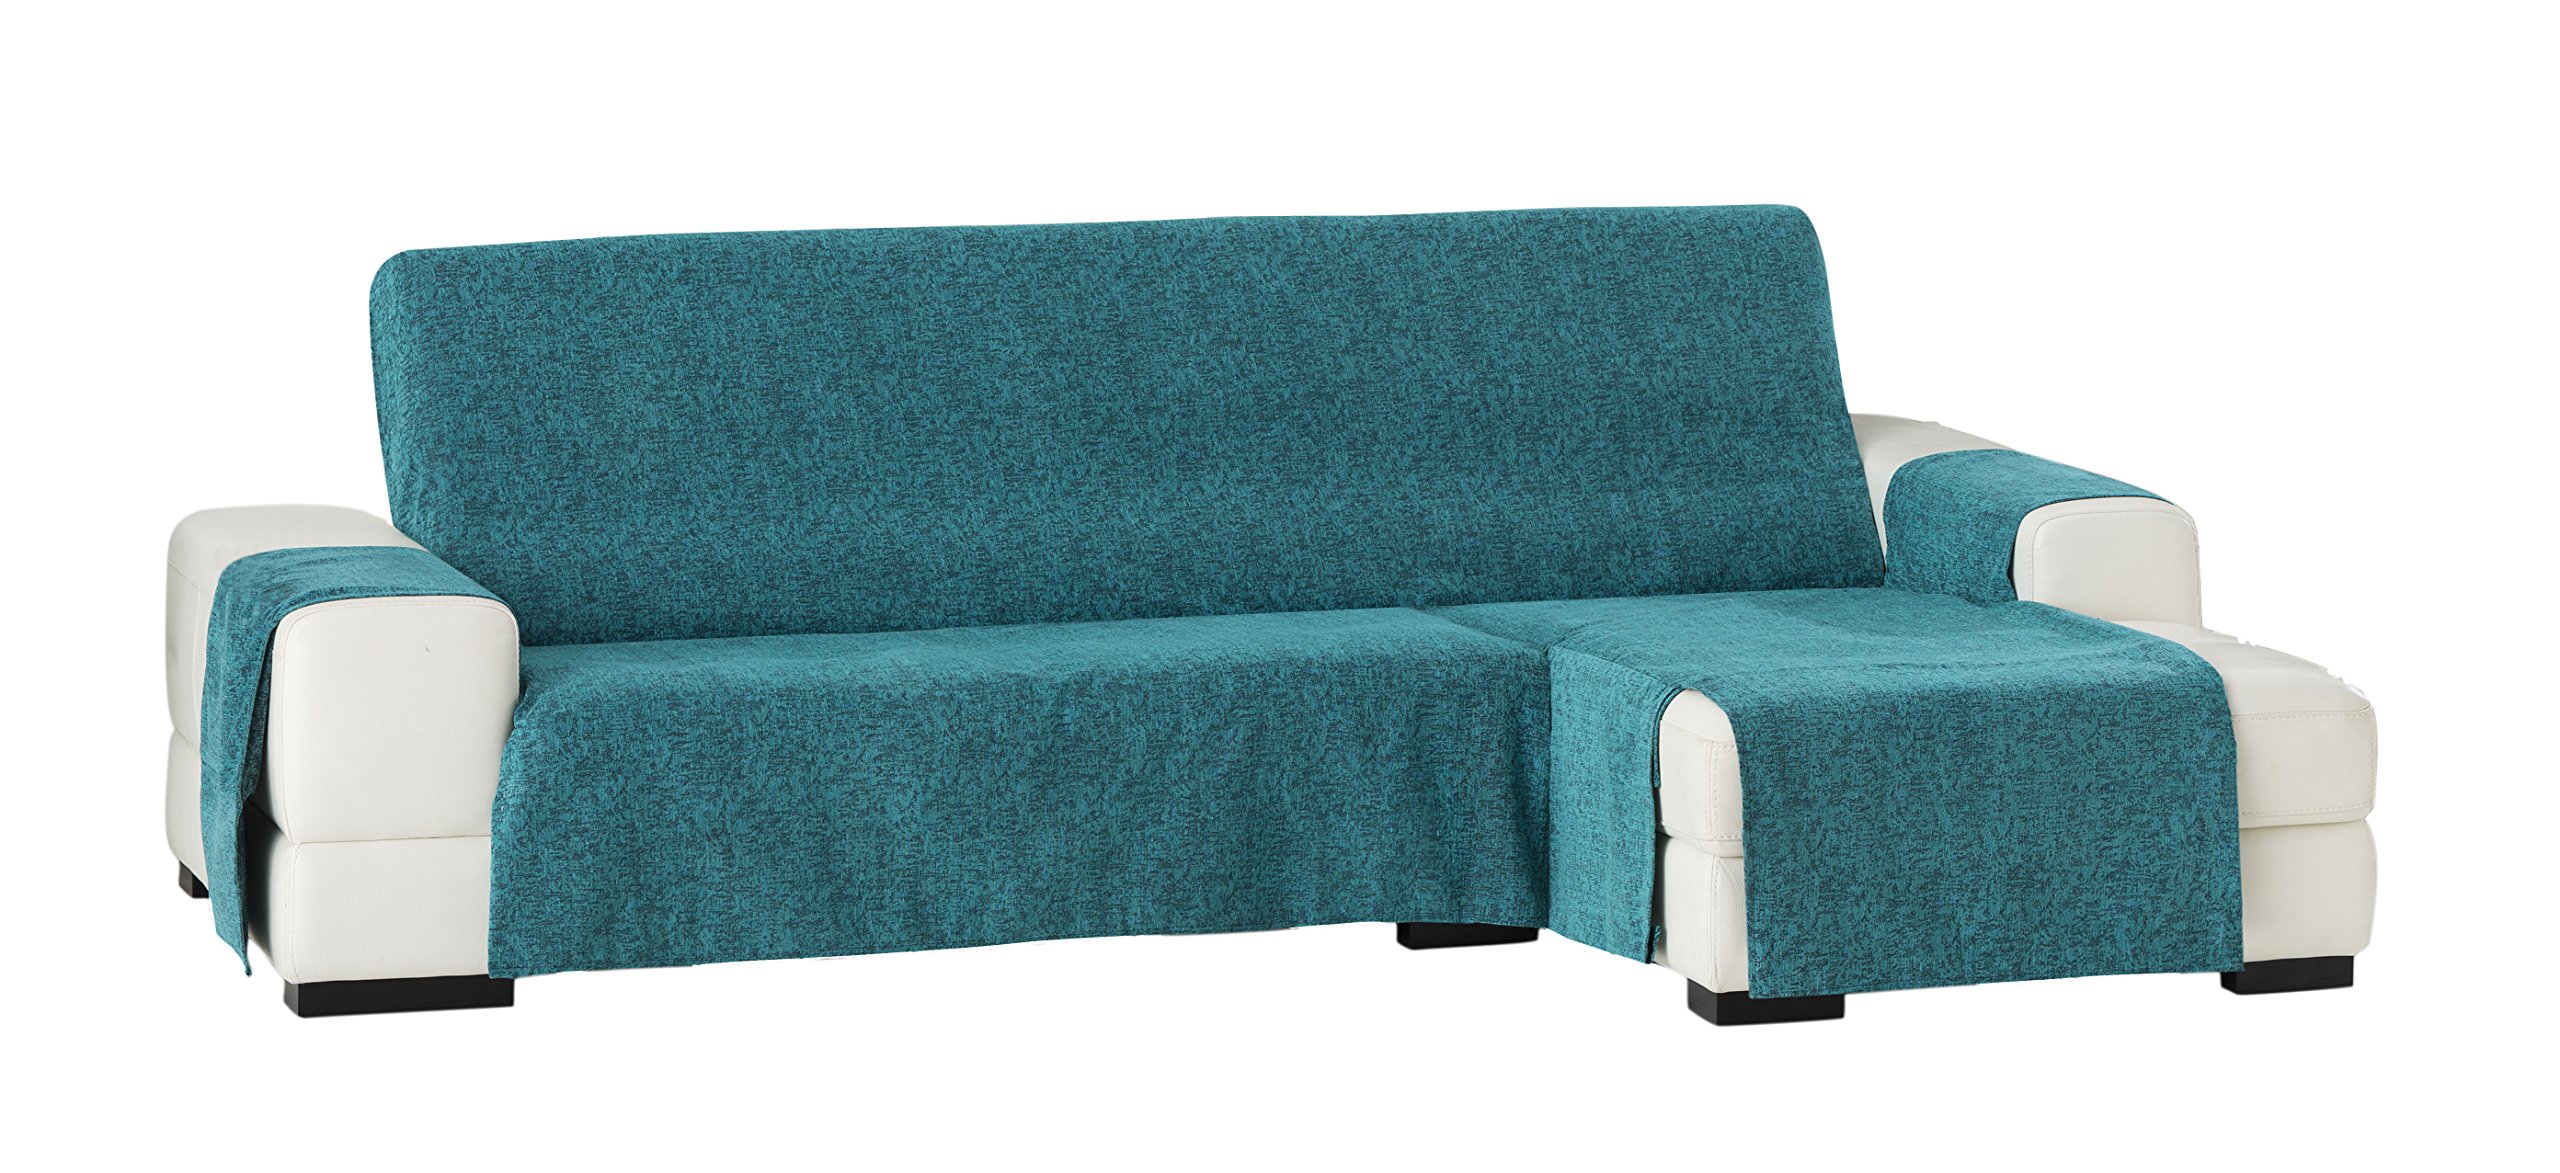 Eysa Dream Nicht elastisch Sofa überwurf Chaise Longue rechts, frontalsicht, Chenille, 03-türkis, 37 x 9 x 29 cm